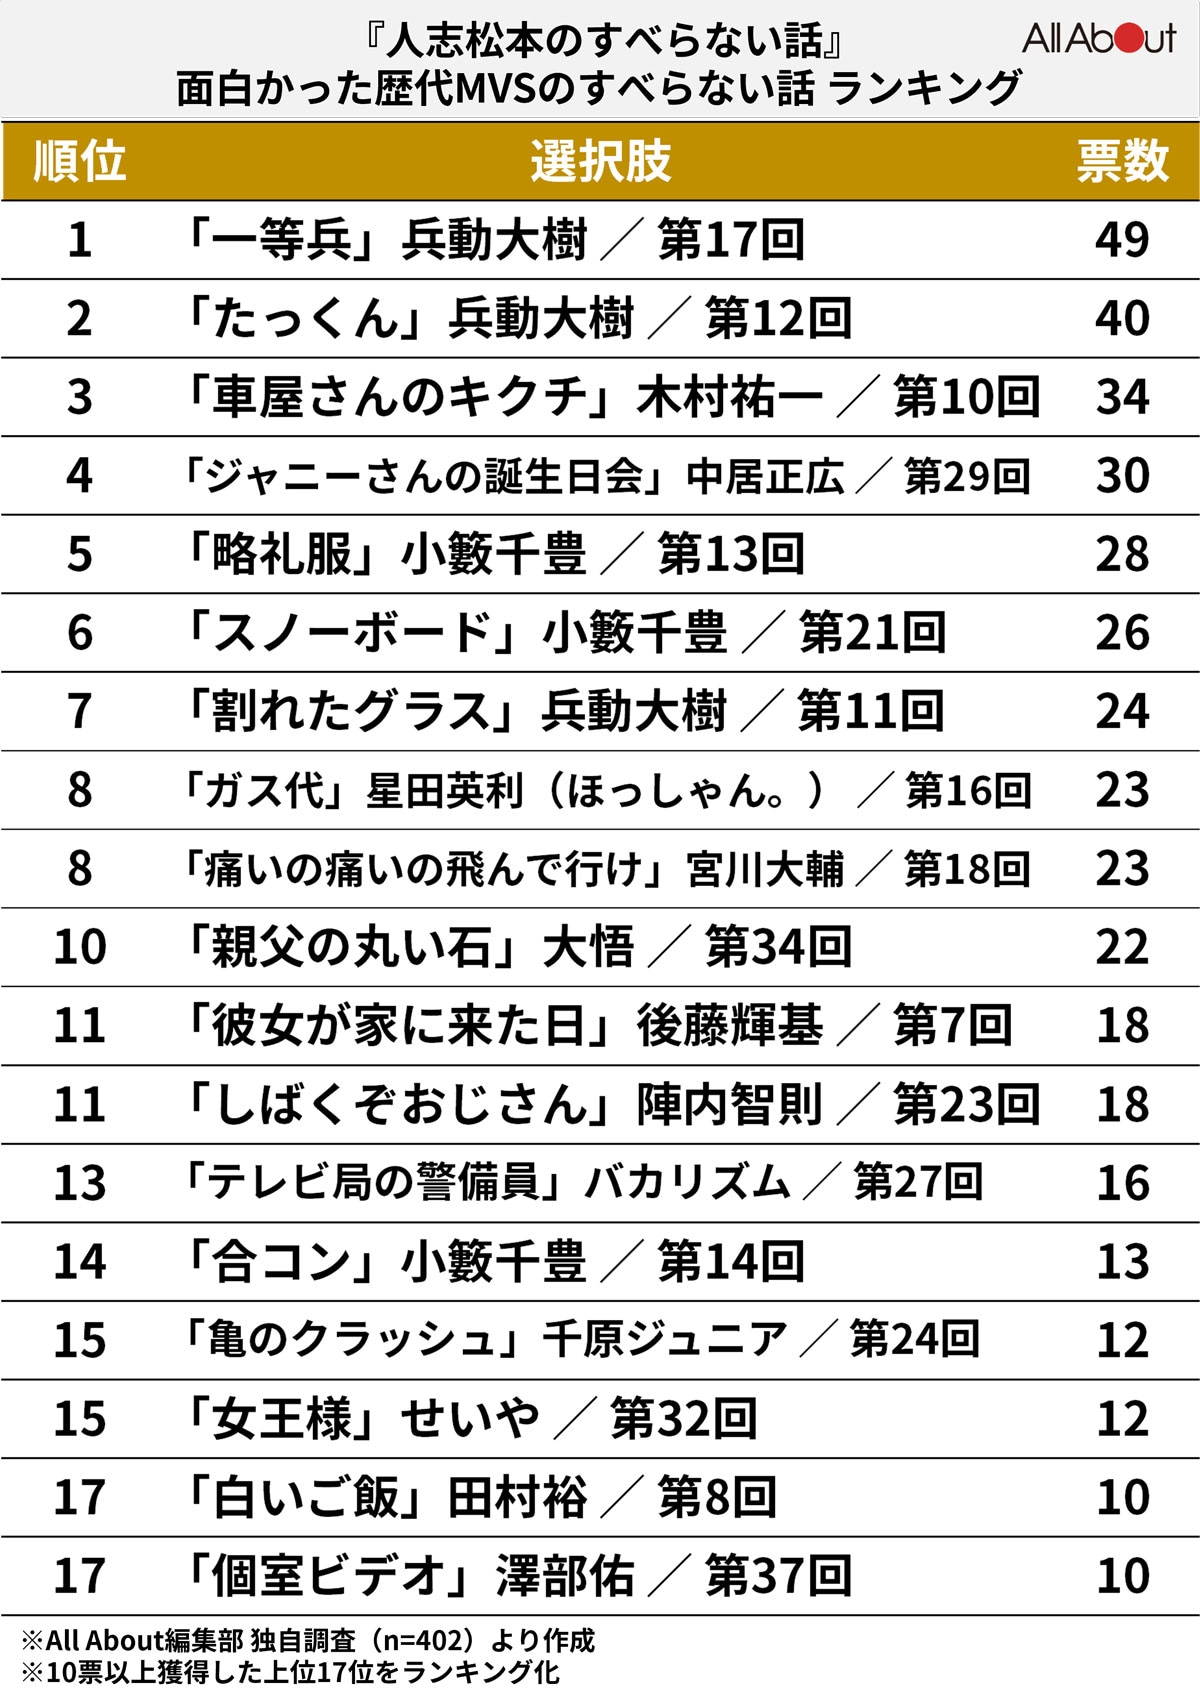 『人志松本のすべらない話』で面白かった「歴代MVSのすべらない話」ランキング